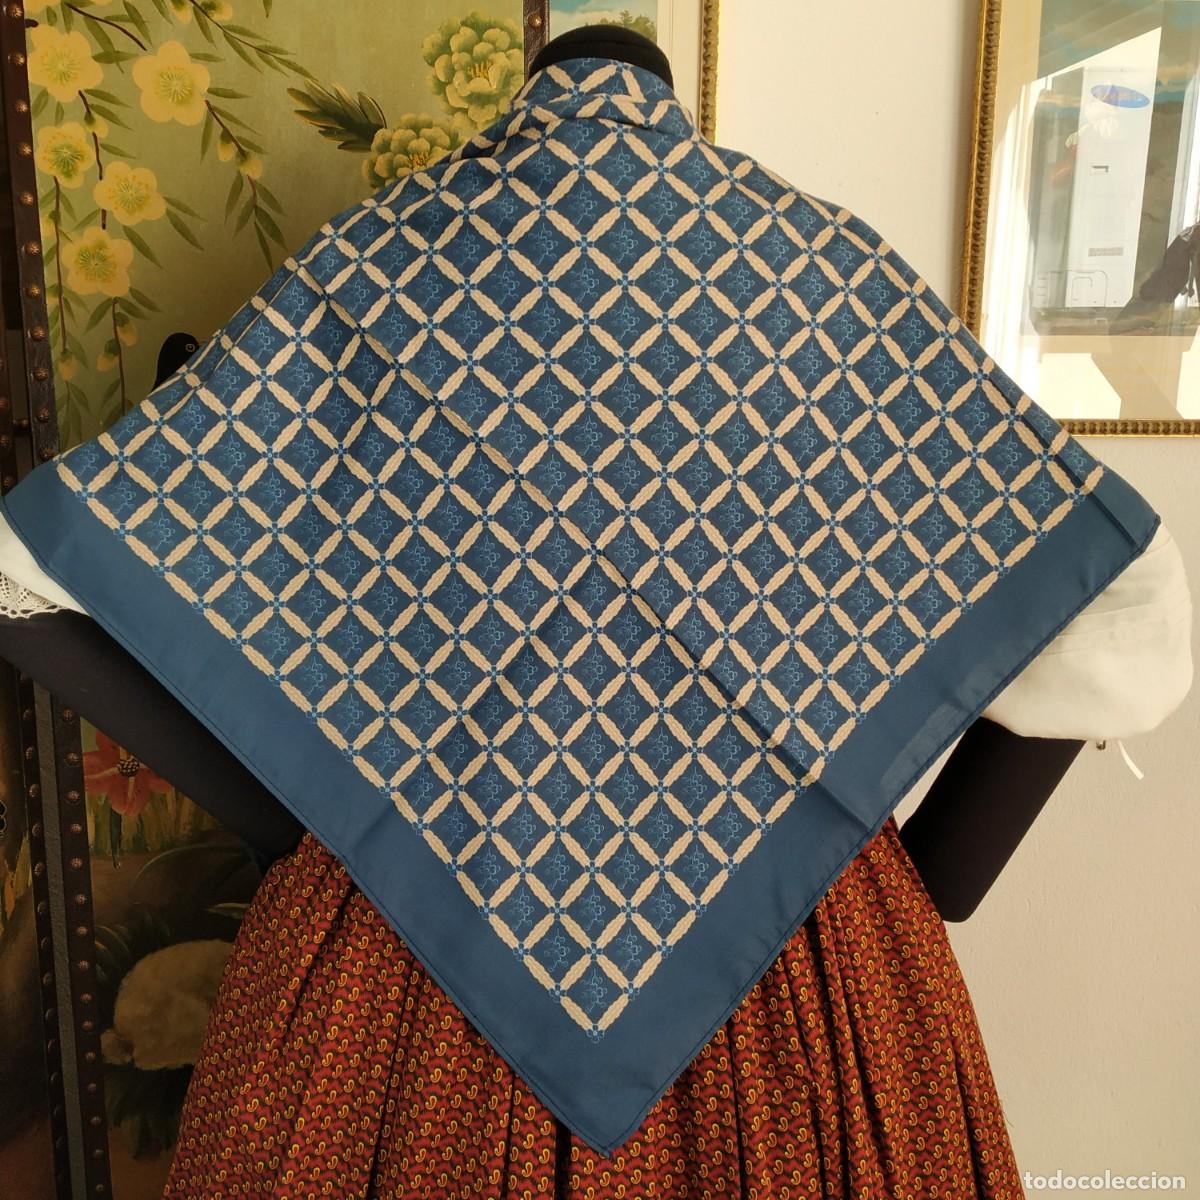 pañuelo indumentaria tradicional ( 1488 ) - Compra venta en todocoleccion